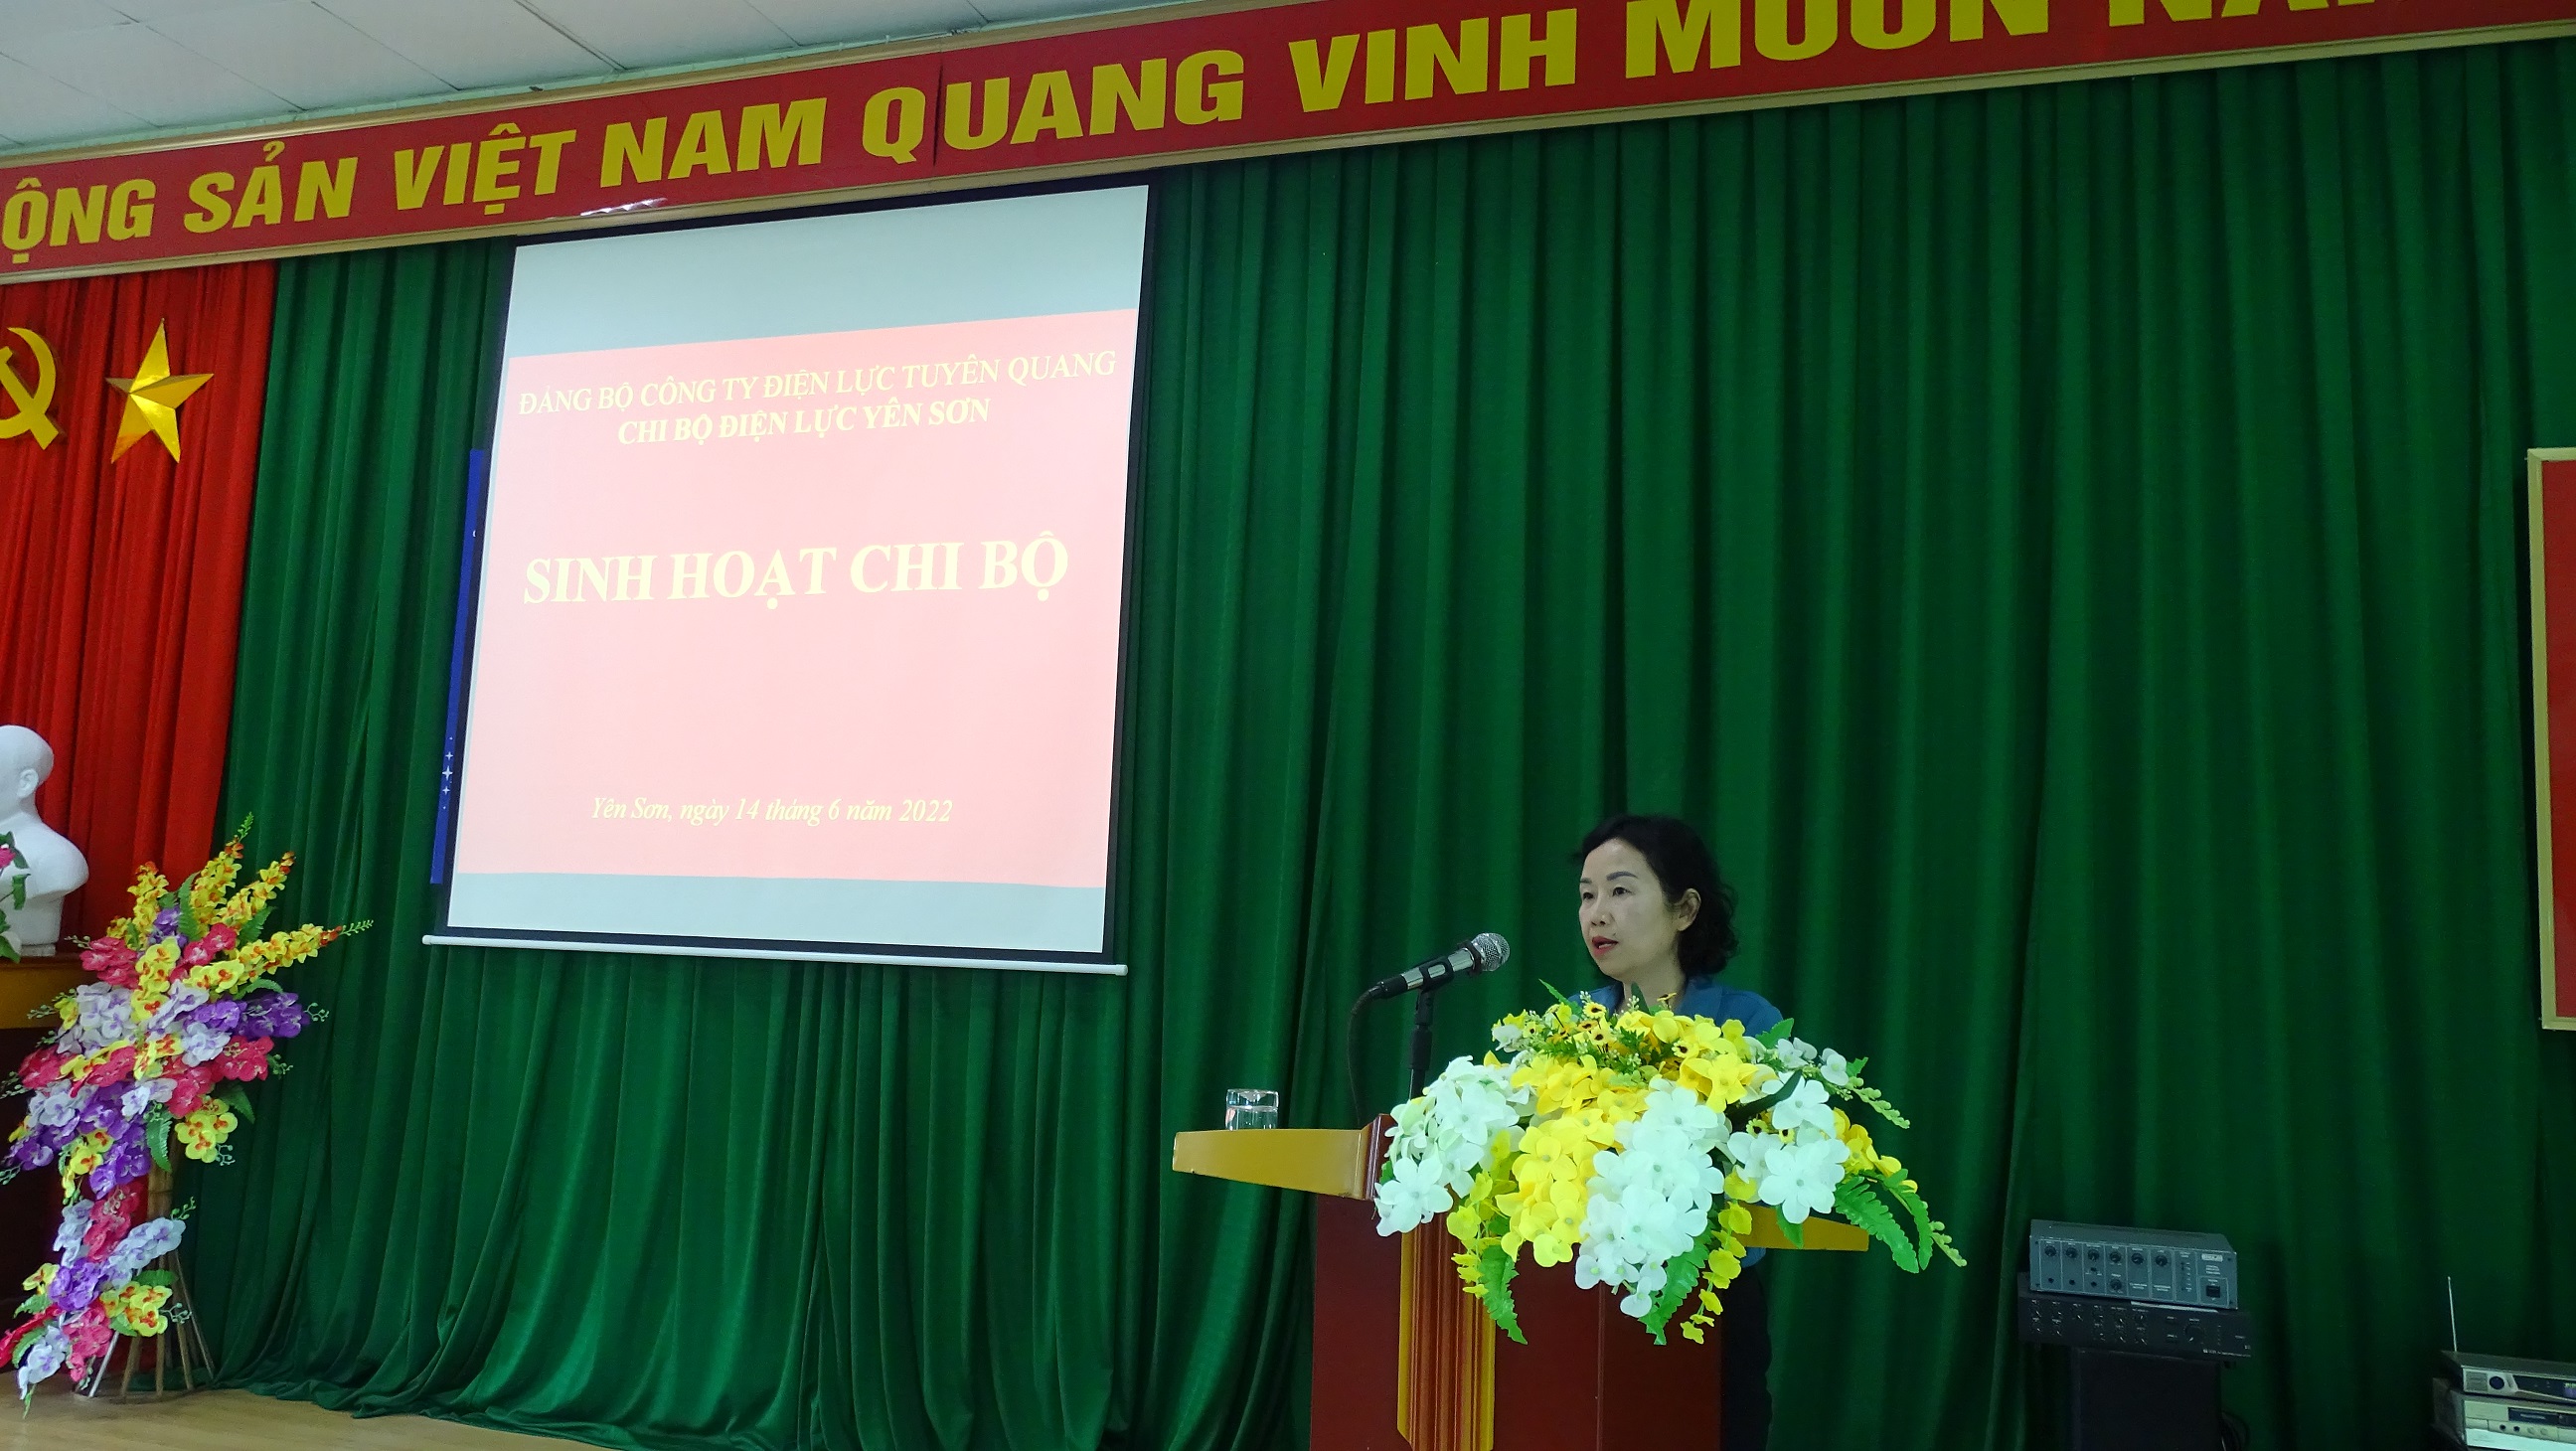 Chi bộ Điện lực Yên Sơn tập trung lãnh đạo thực hiện nhiệm vụ chính trị; nâng cao chất lượng công tác phục vụ nhân dân.